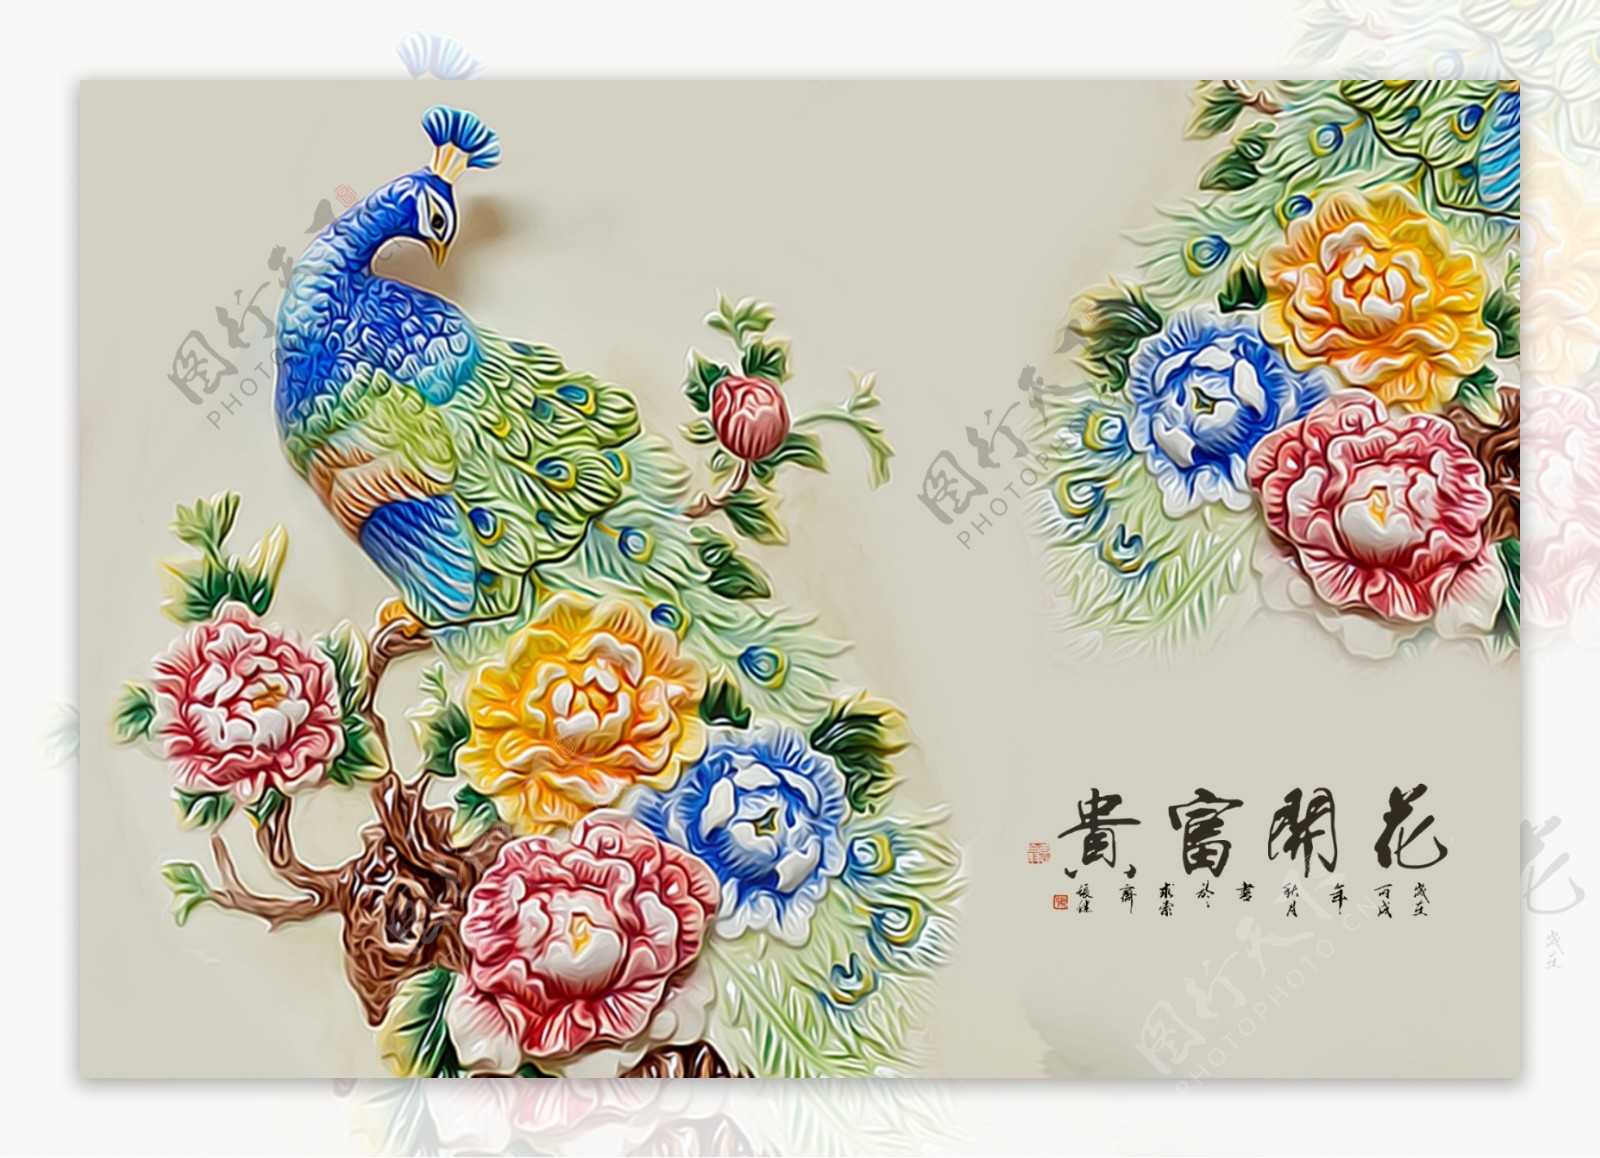 七彩孔雀花卉浮雕背景墙